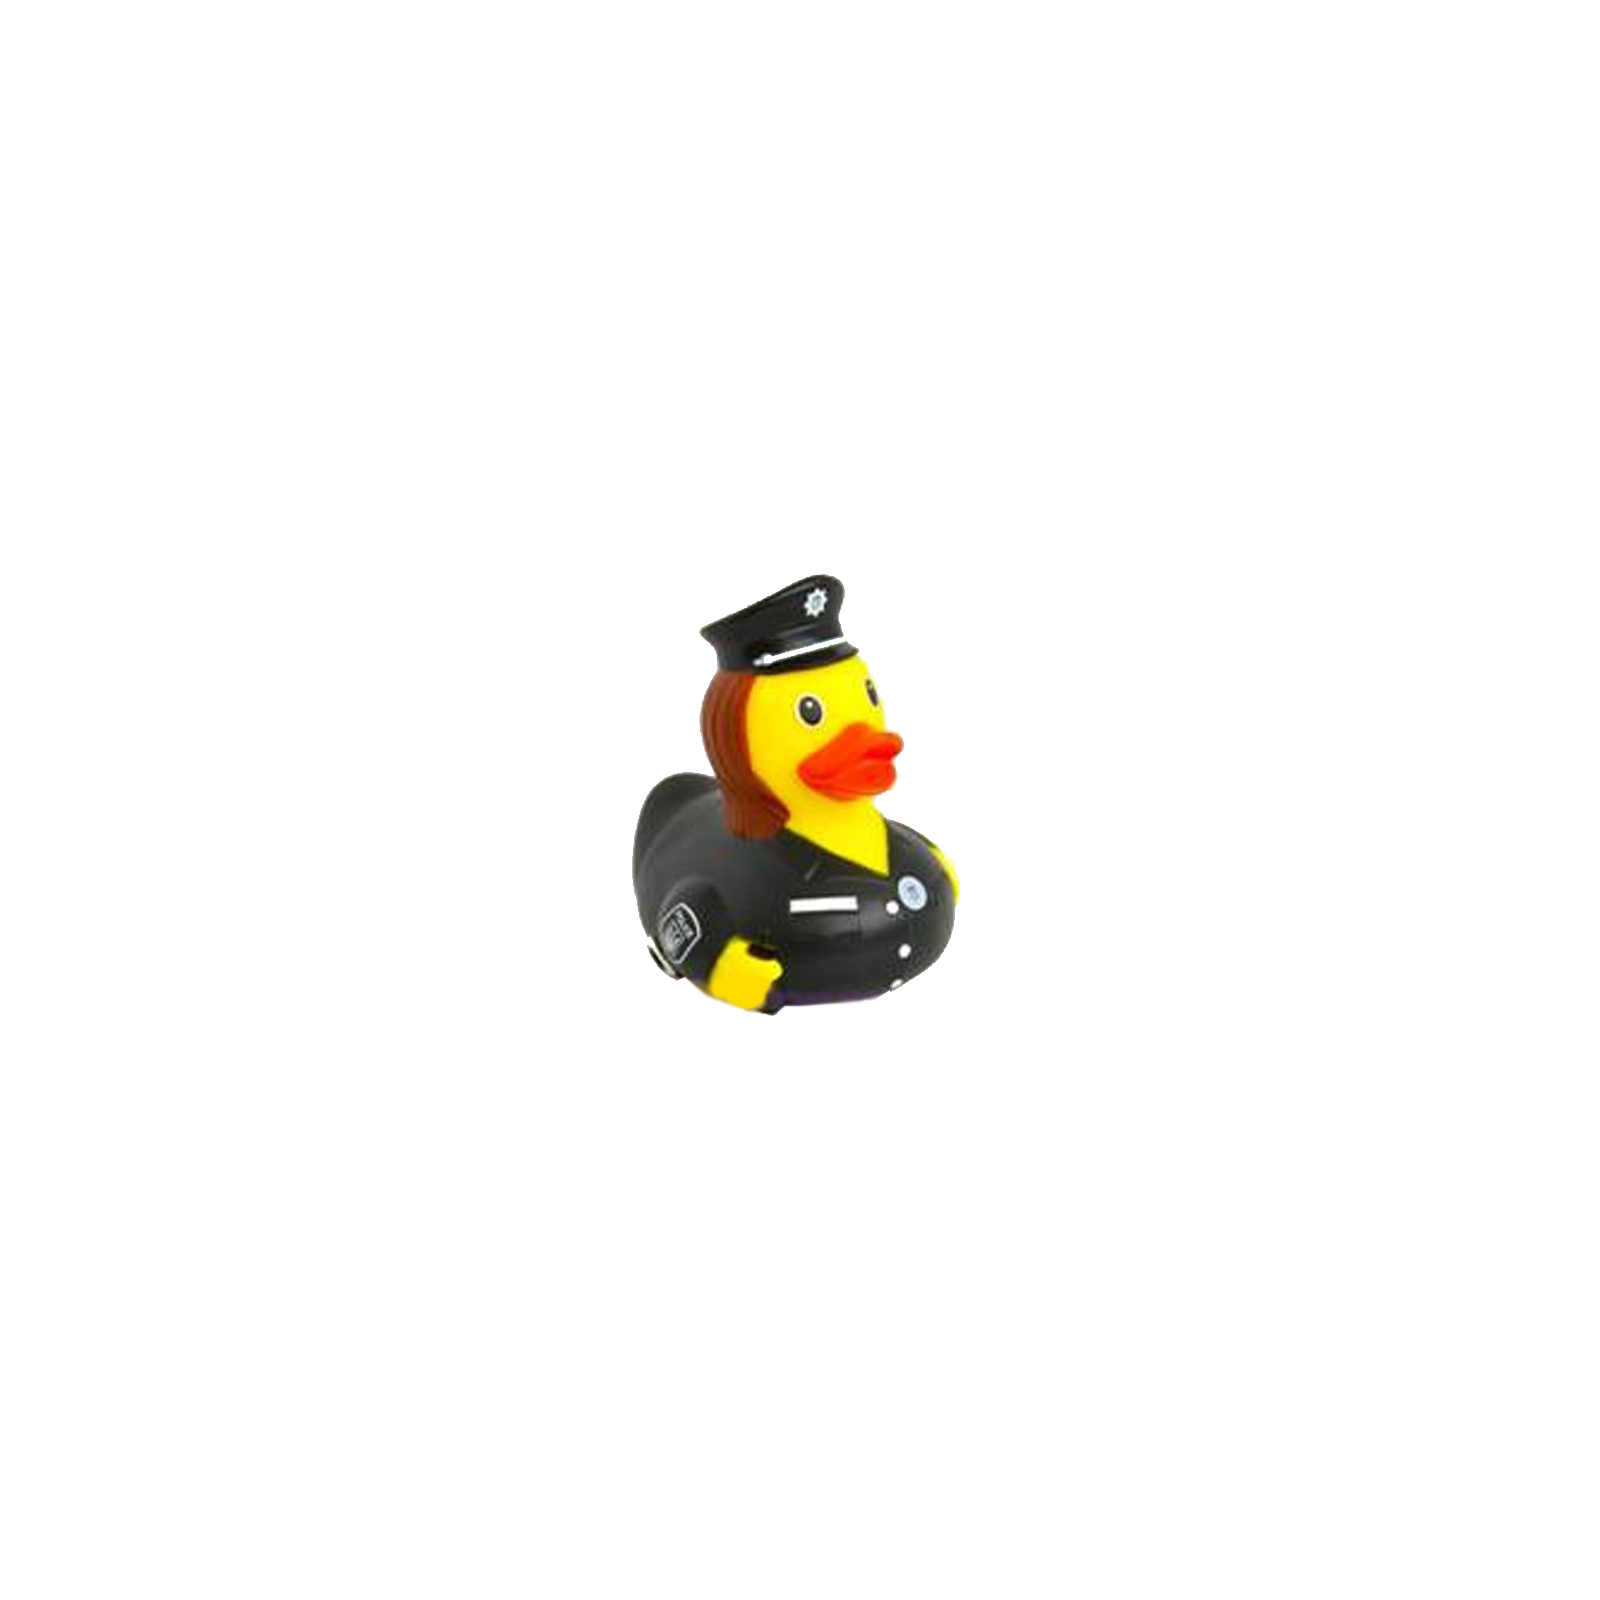 Игрушка для ванной Funny Ducks Утка Полицейская (L1885)